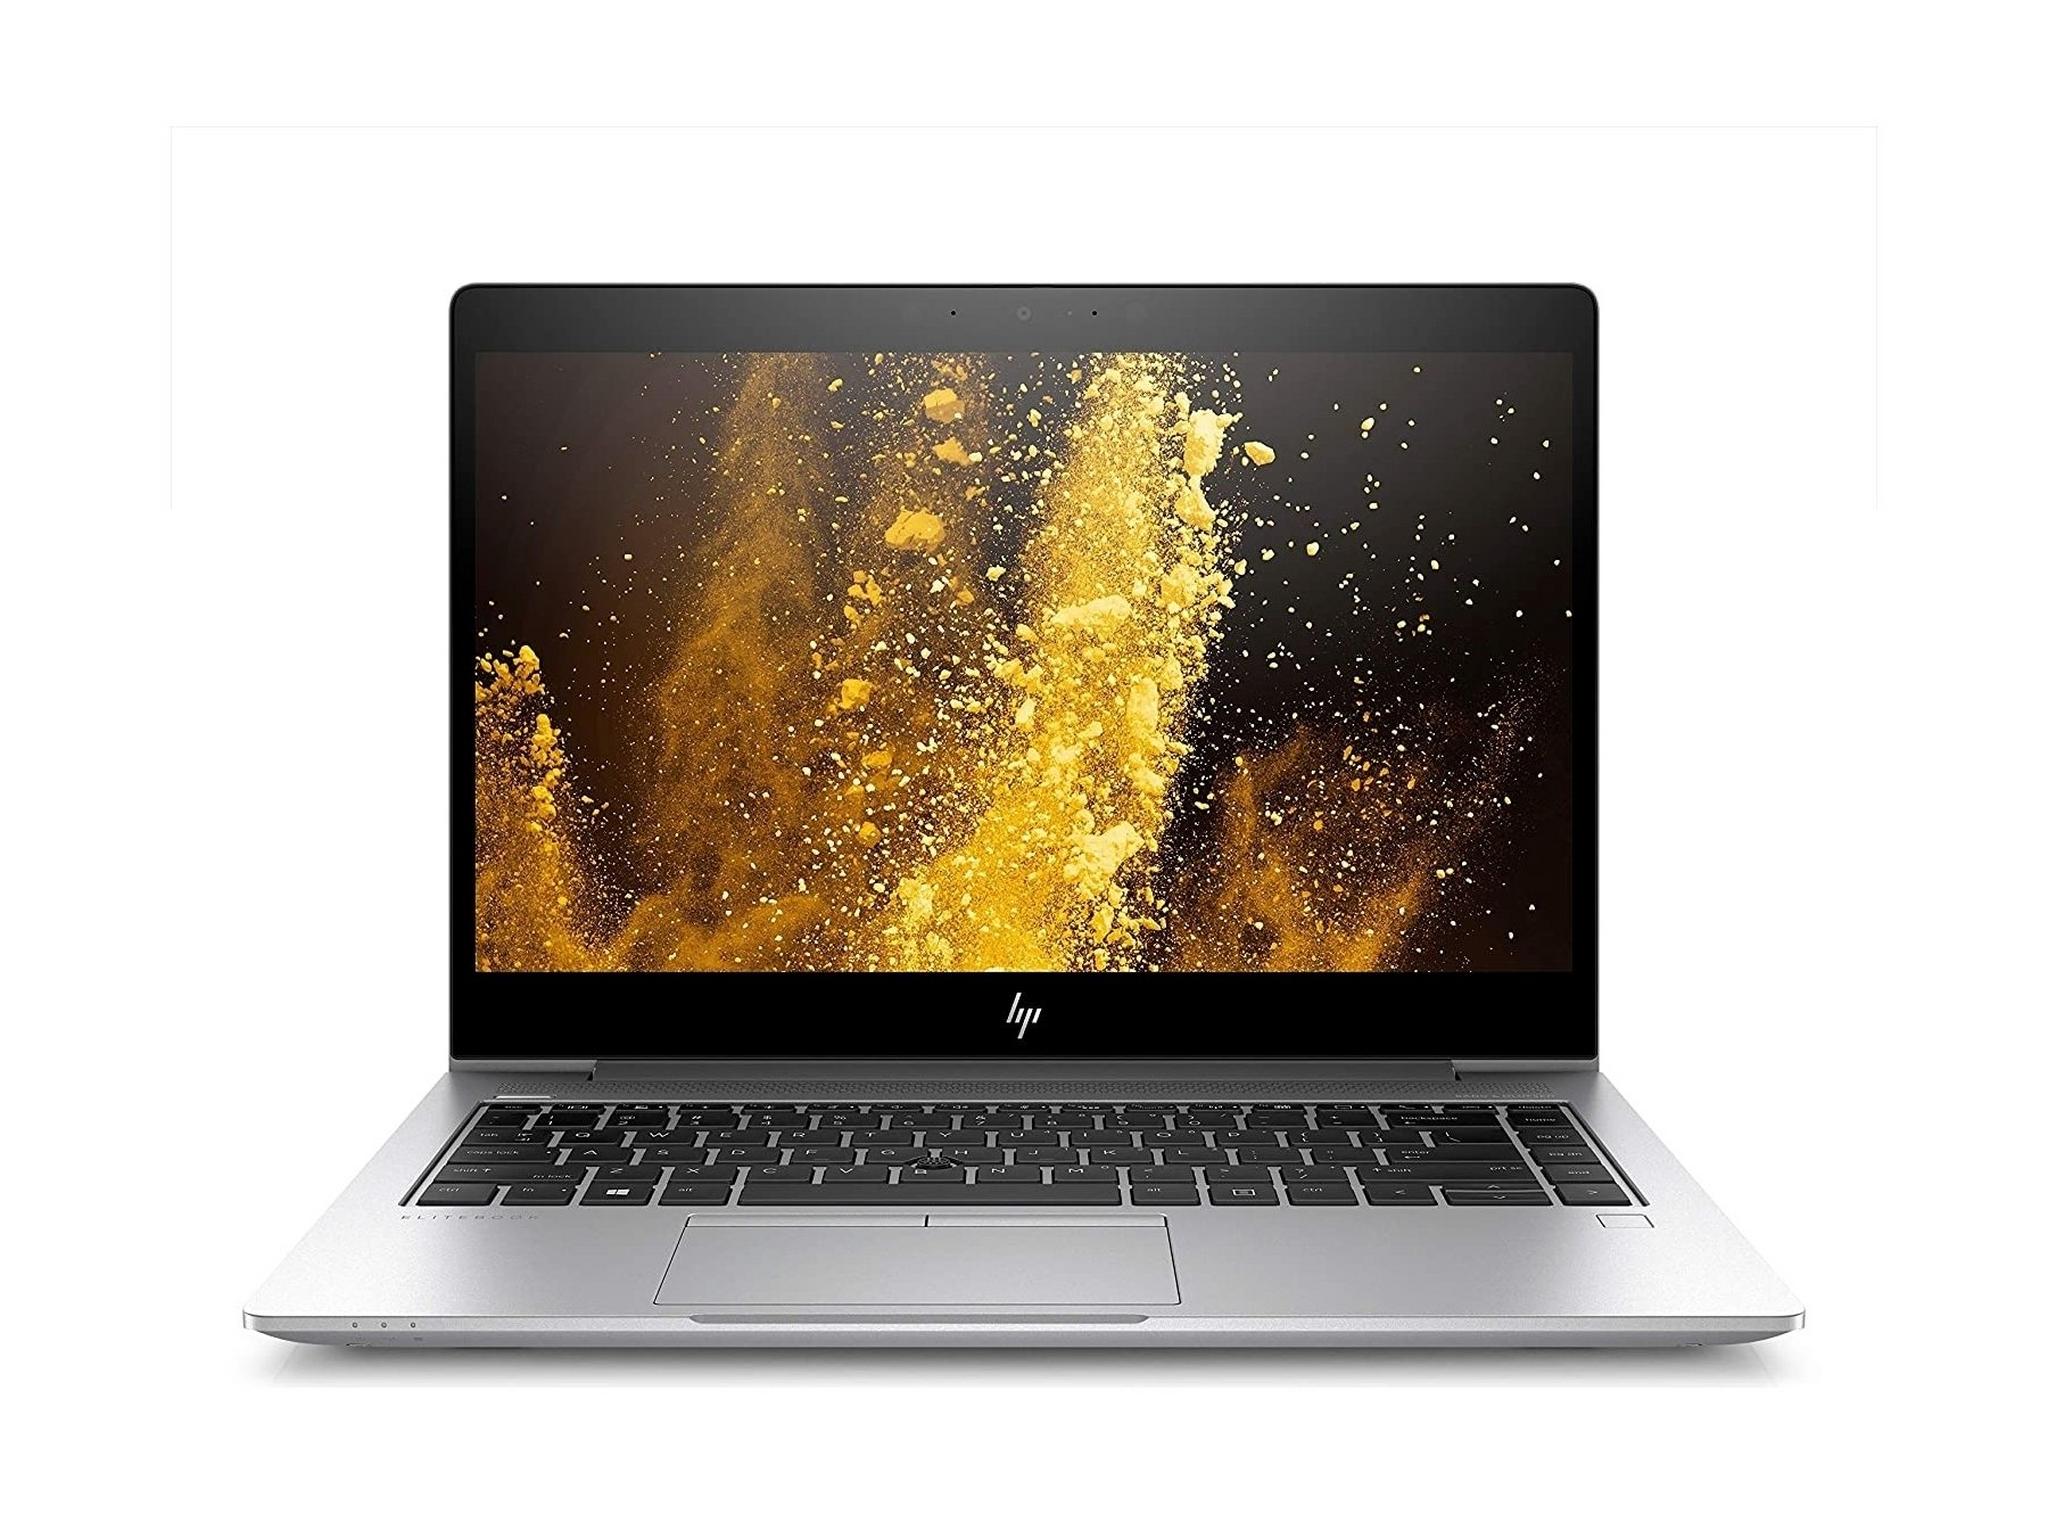 HP Elitebook 840 Intel Core i7 8GB RAM 512GB SSD 14" Laptop (177C9EA) - Silver